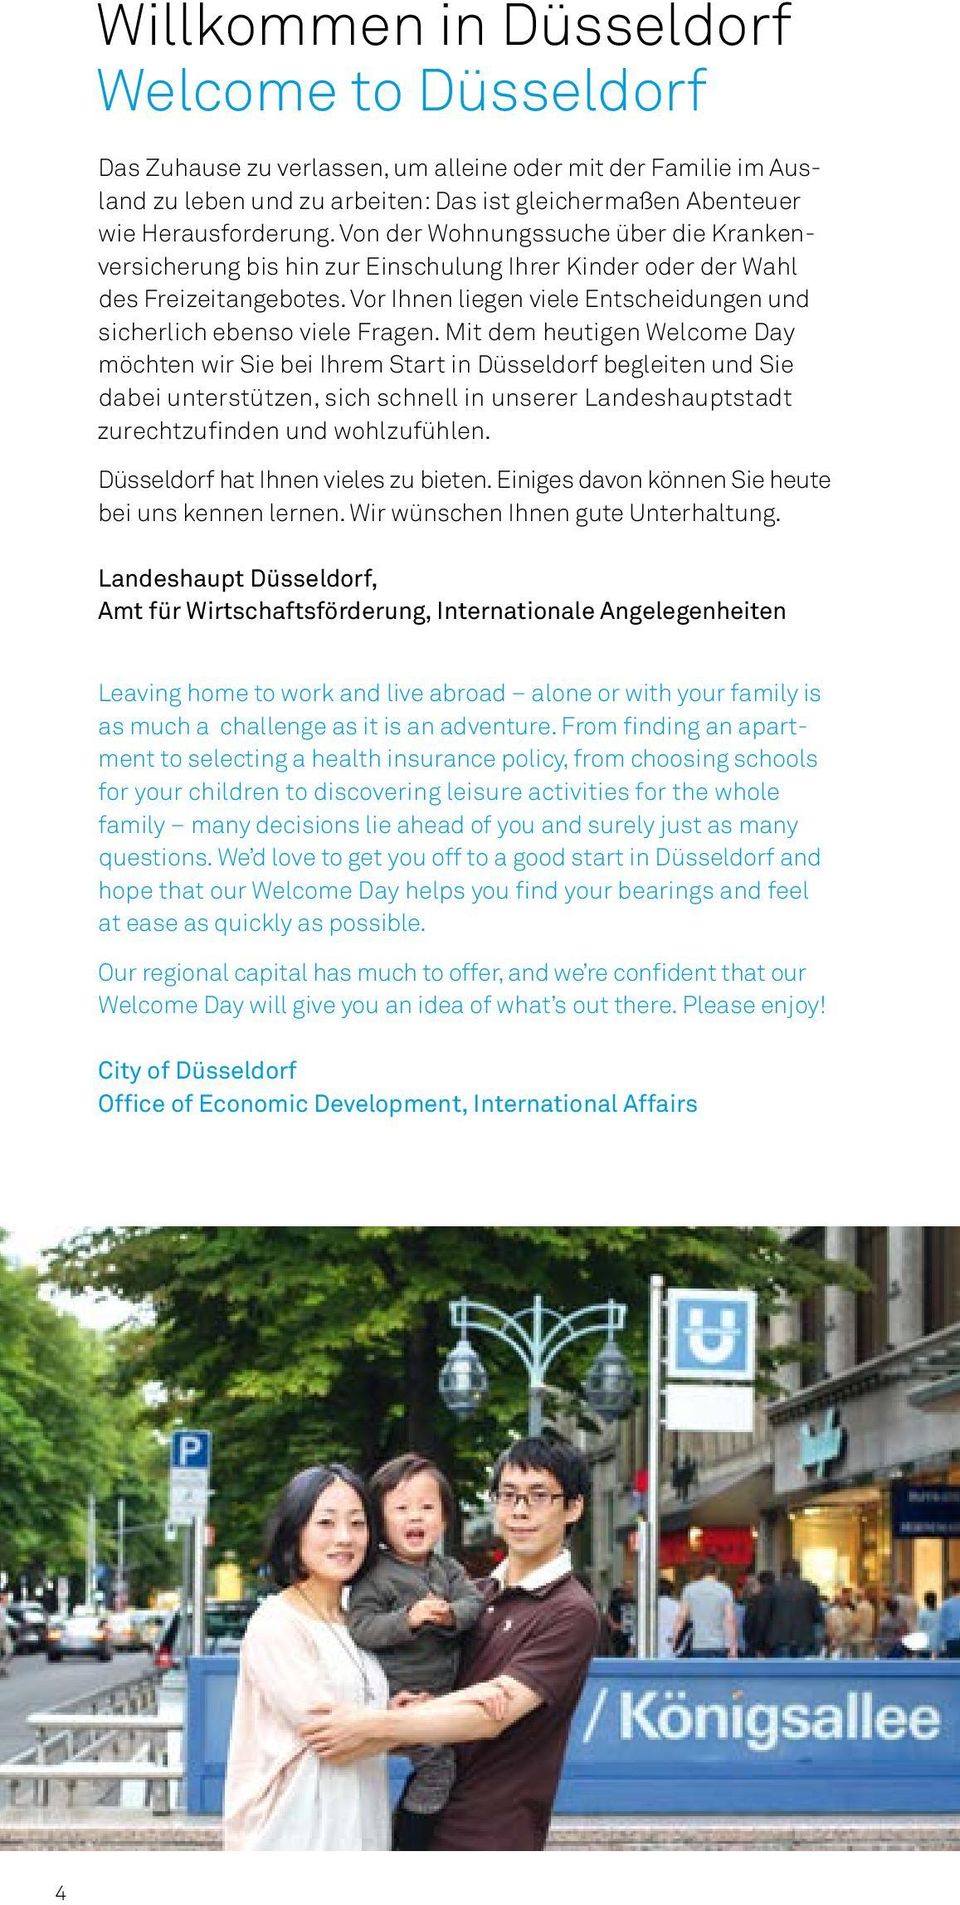 Mit dem heutigen Welcome Day möchten wir Sie bei Ihrem Start in Düsseldorf begleiten und Sie dabei unterstützen, sich schnell in unserer Landeshauptstadt zurechtzufinden und wohlzufühlen.